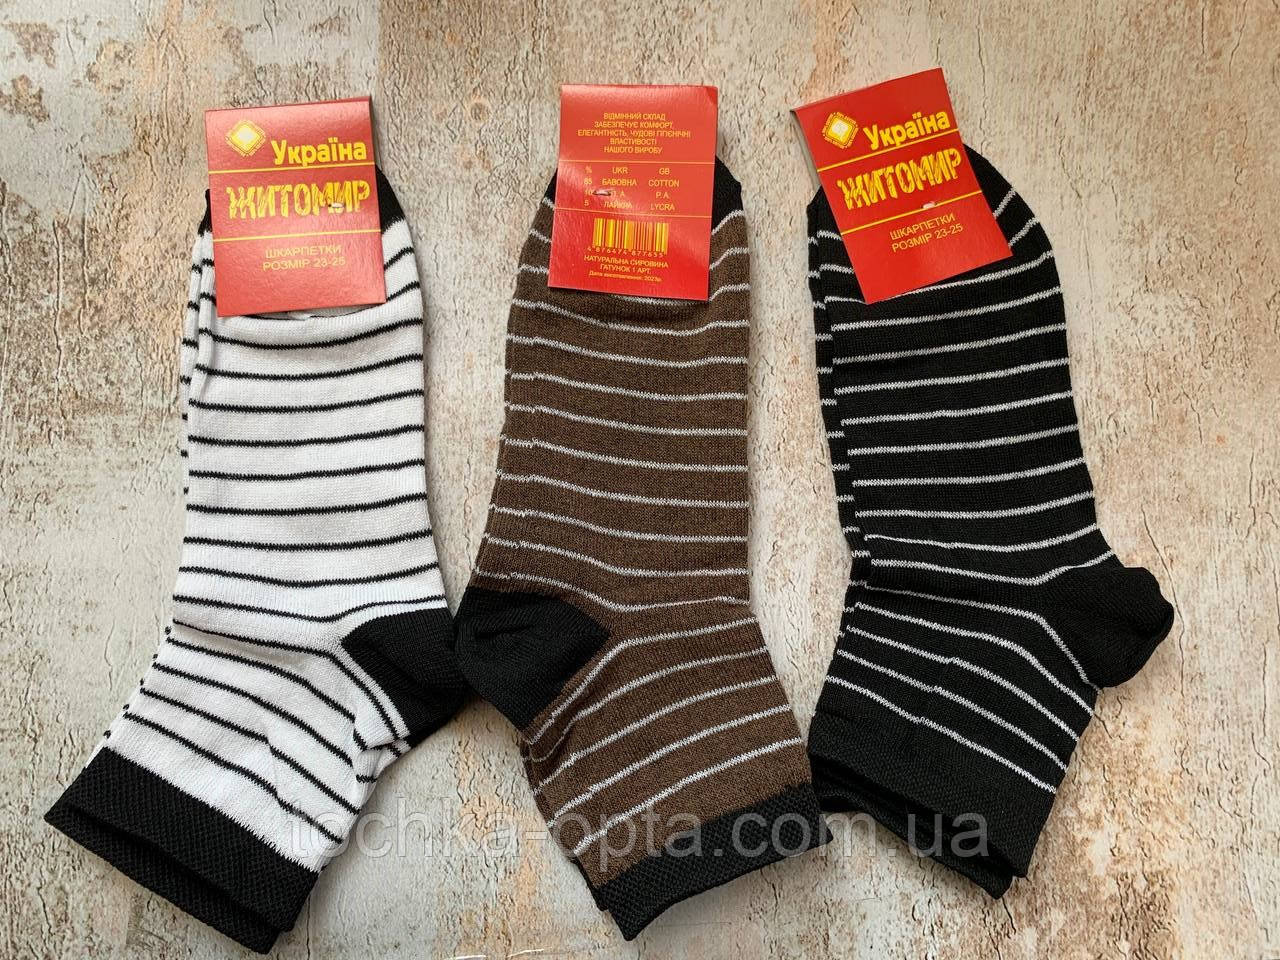 Шкарпетки Житомир 23-25 смужка (мікс коліра)